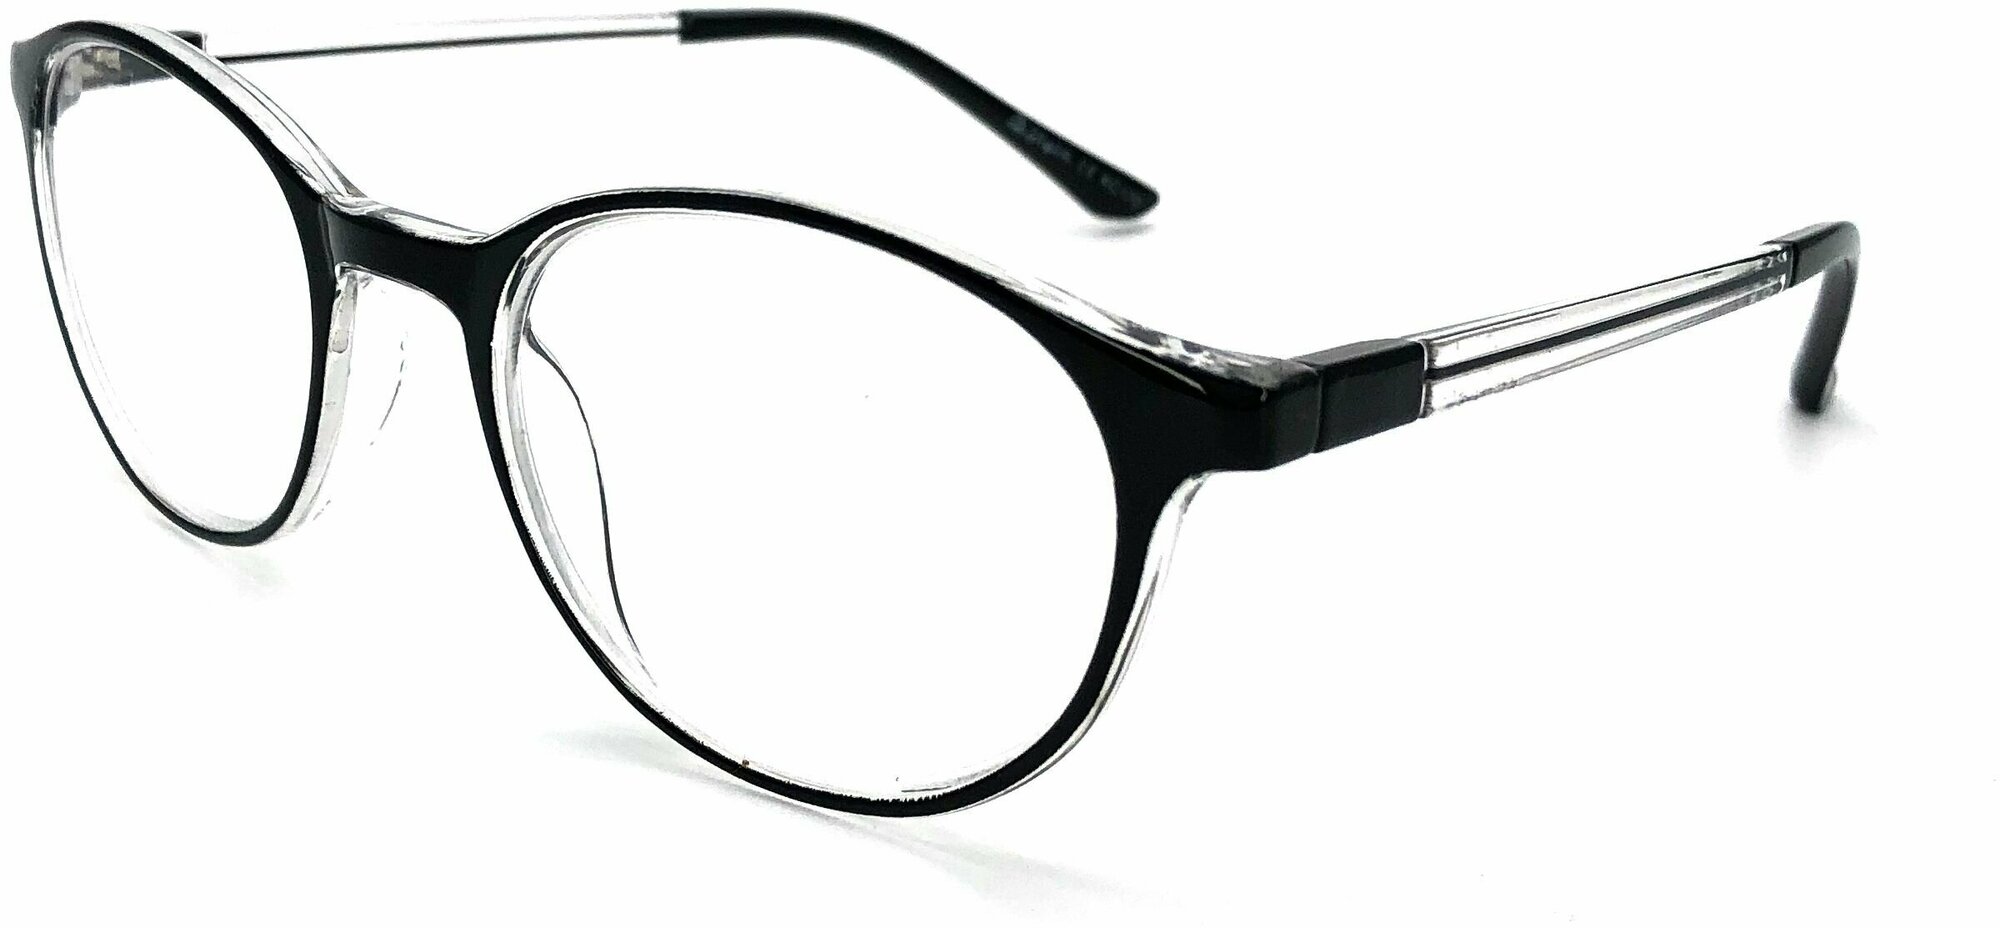 Очки для зрения +4.00 KC-170 (пластик) черный / очки для чтения +4.00